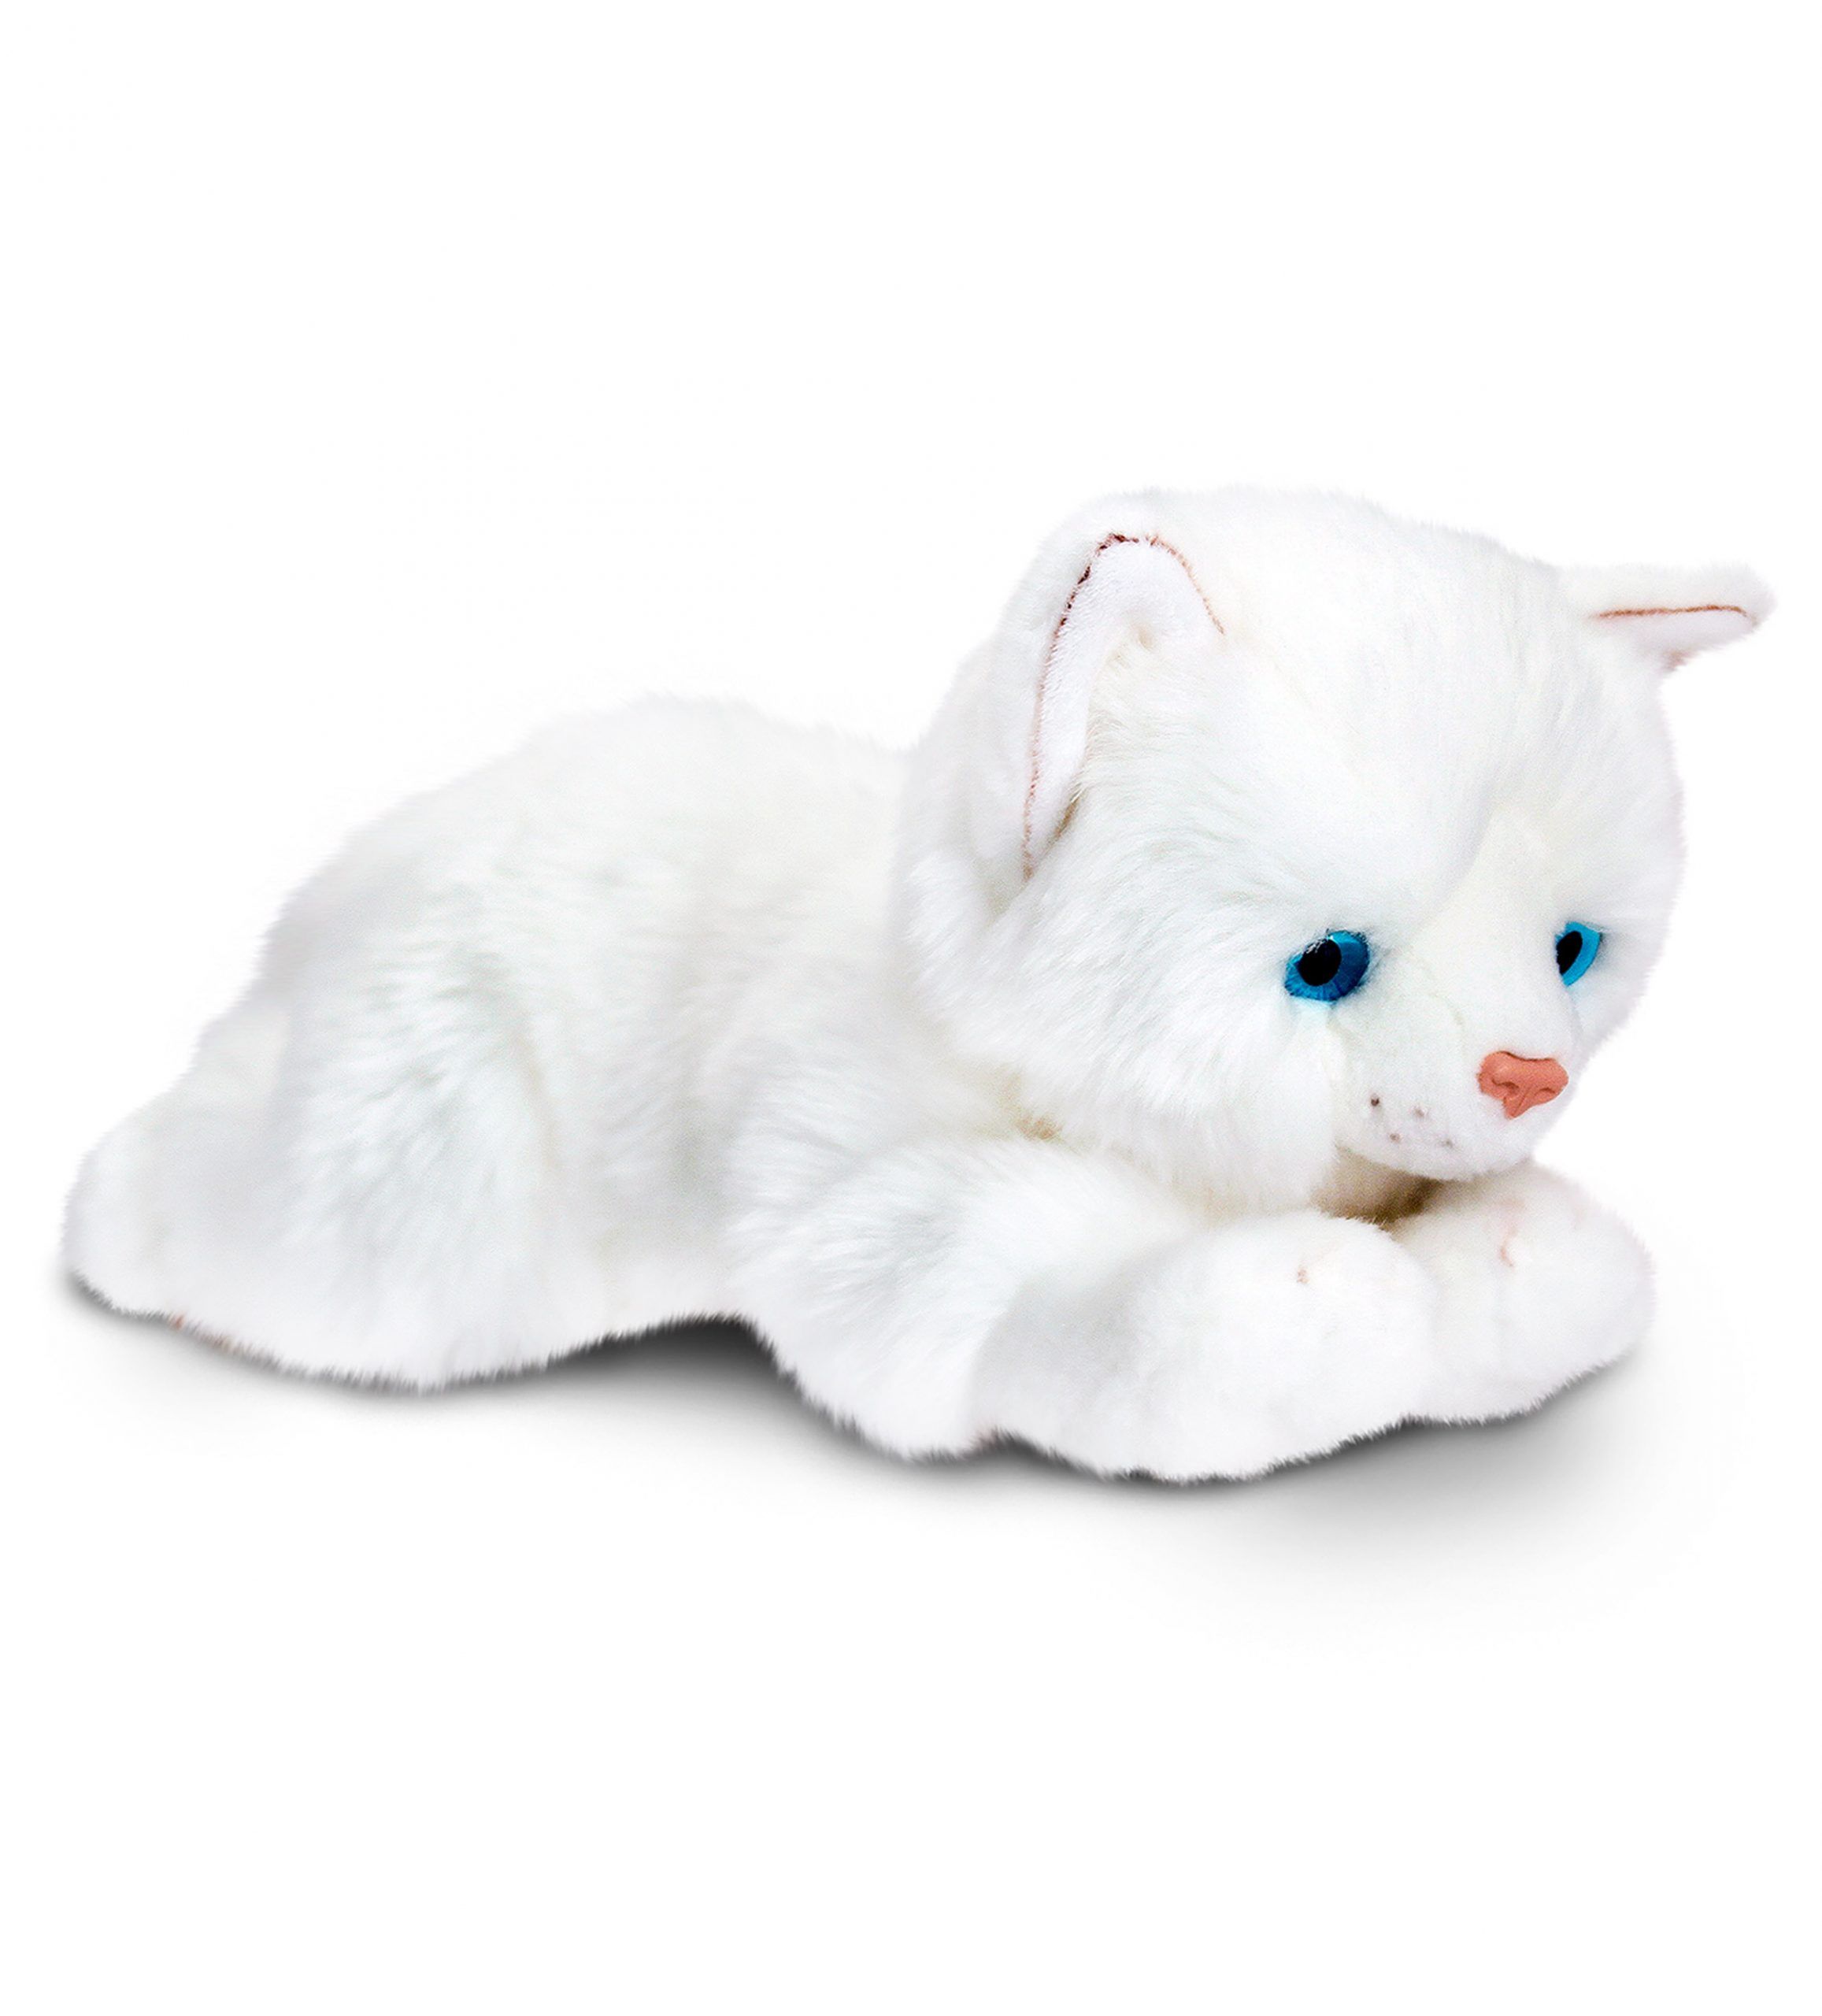 Игрушки маленькие коты. Keel Toys Cat 30cm. Keel Toys кошка. Мягкая игрушка кошка белая. Белый котенок игрушка.